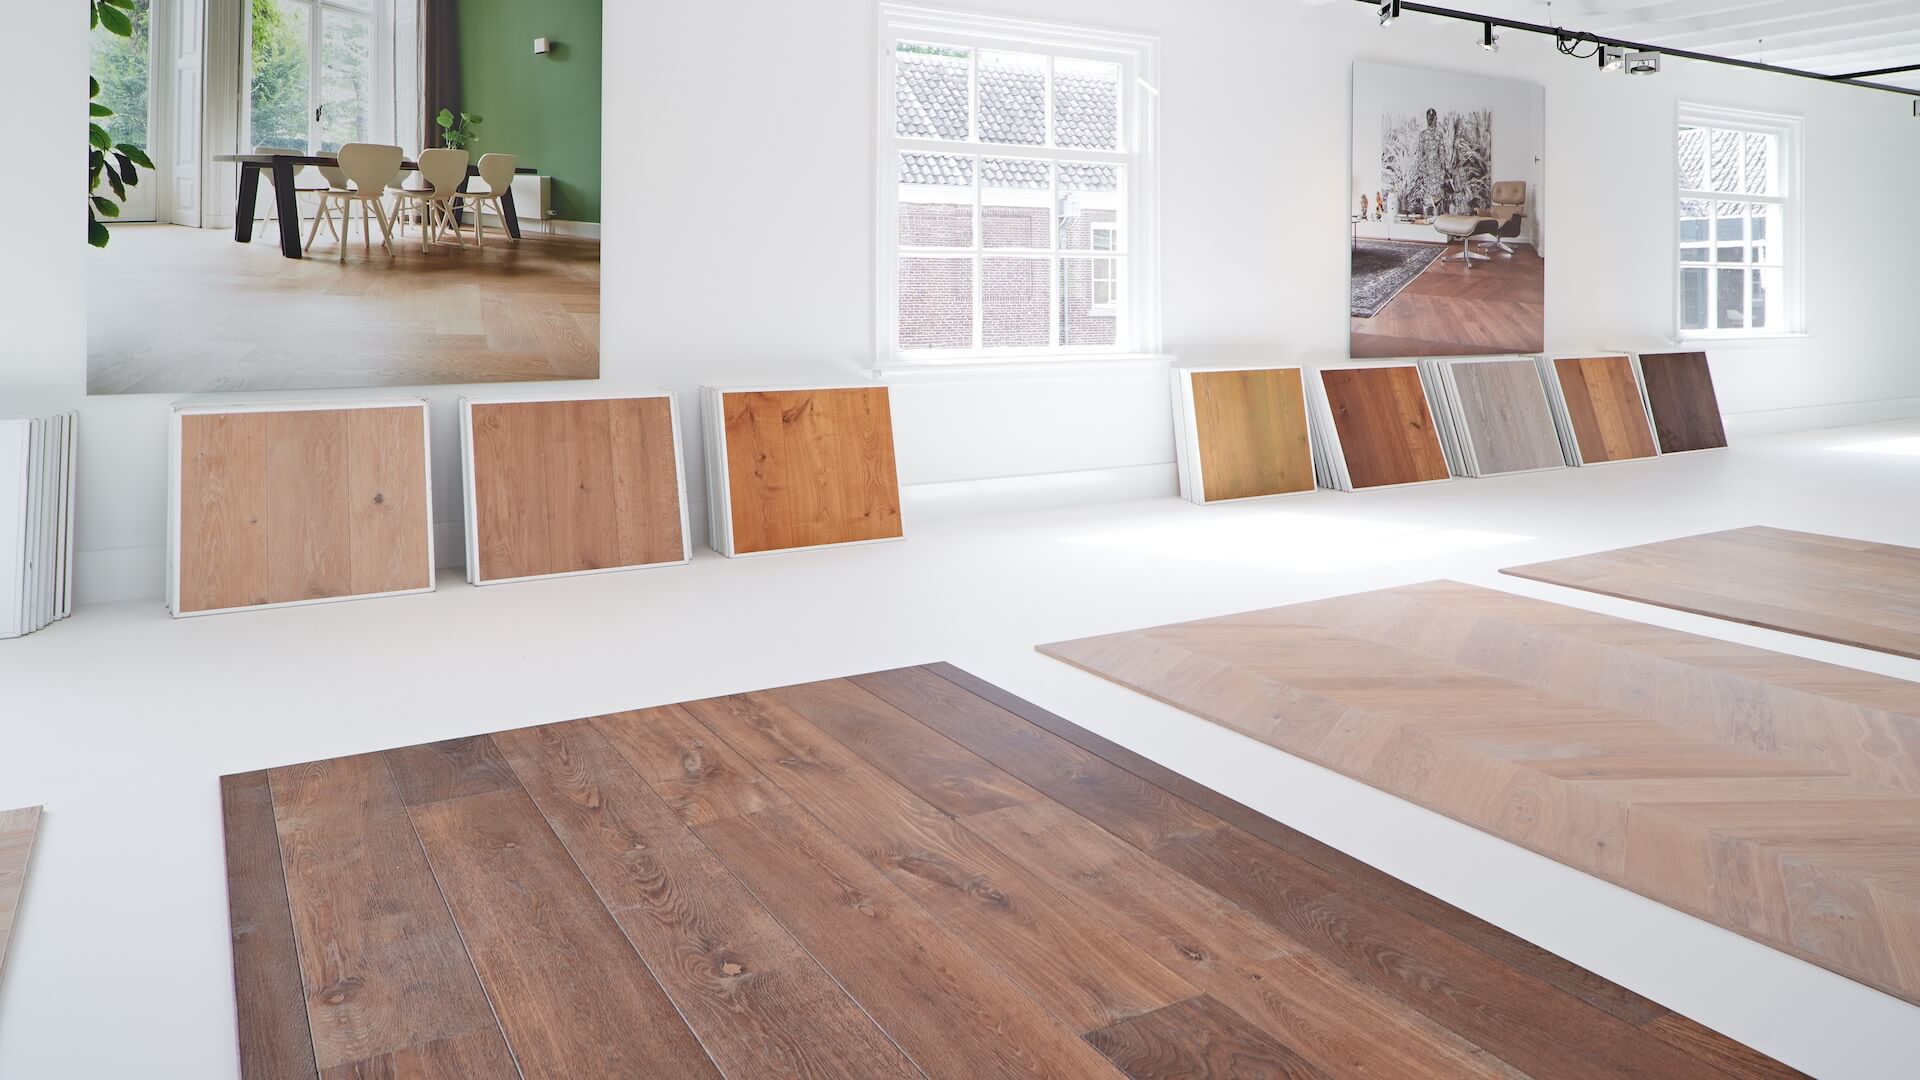 In de showroom van Uipkes liggen lichte en donkere houten vloeren